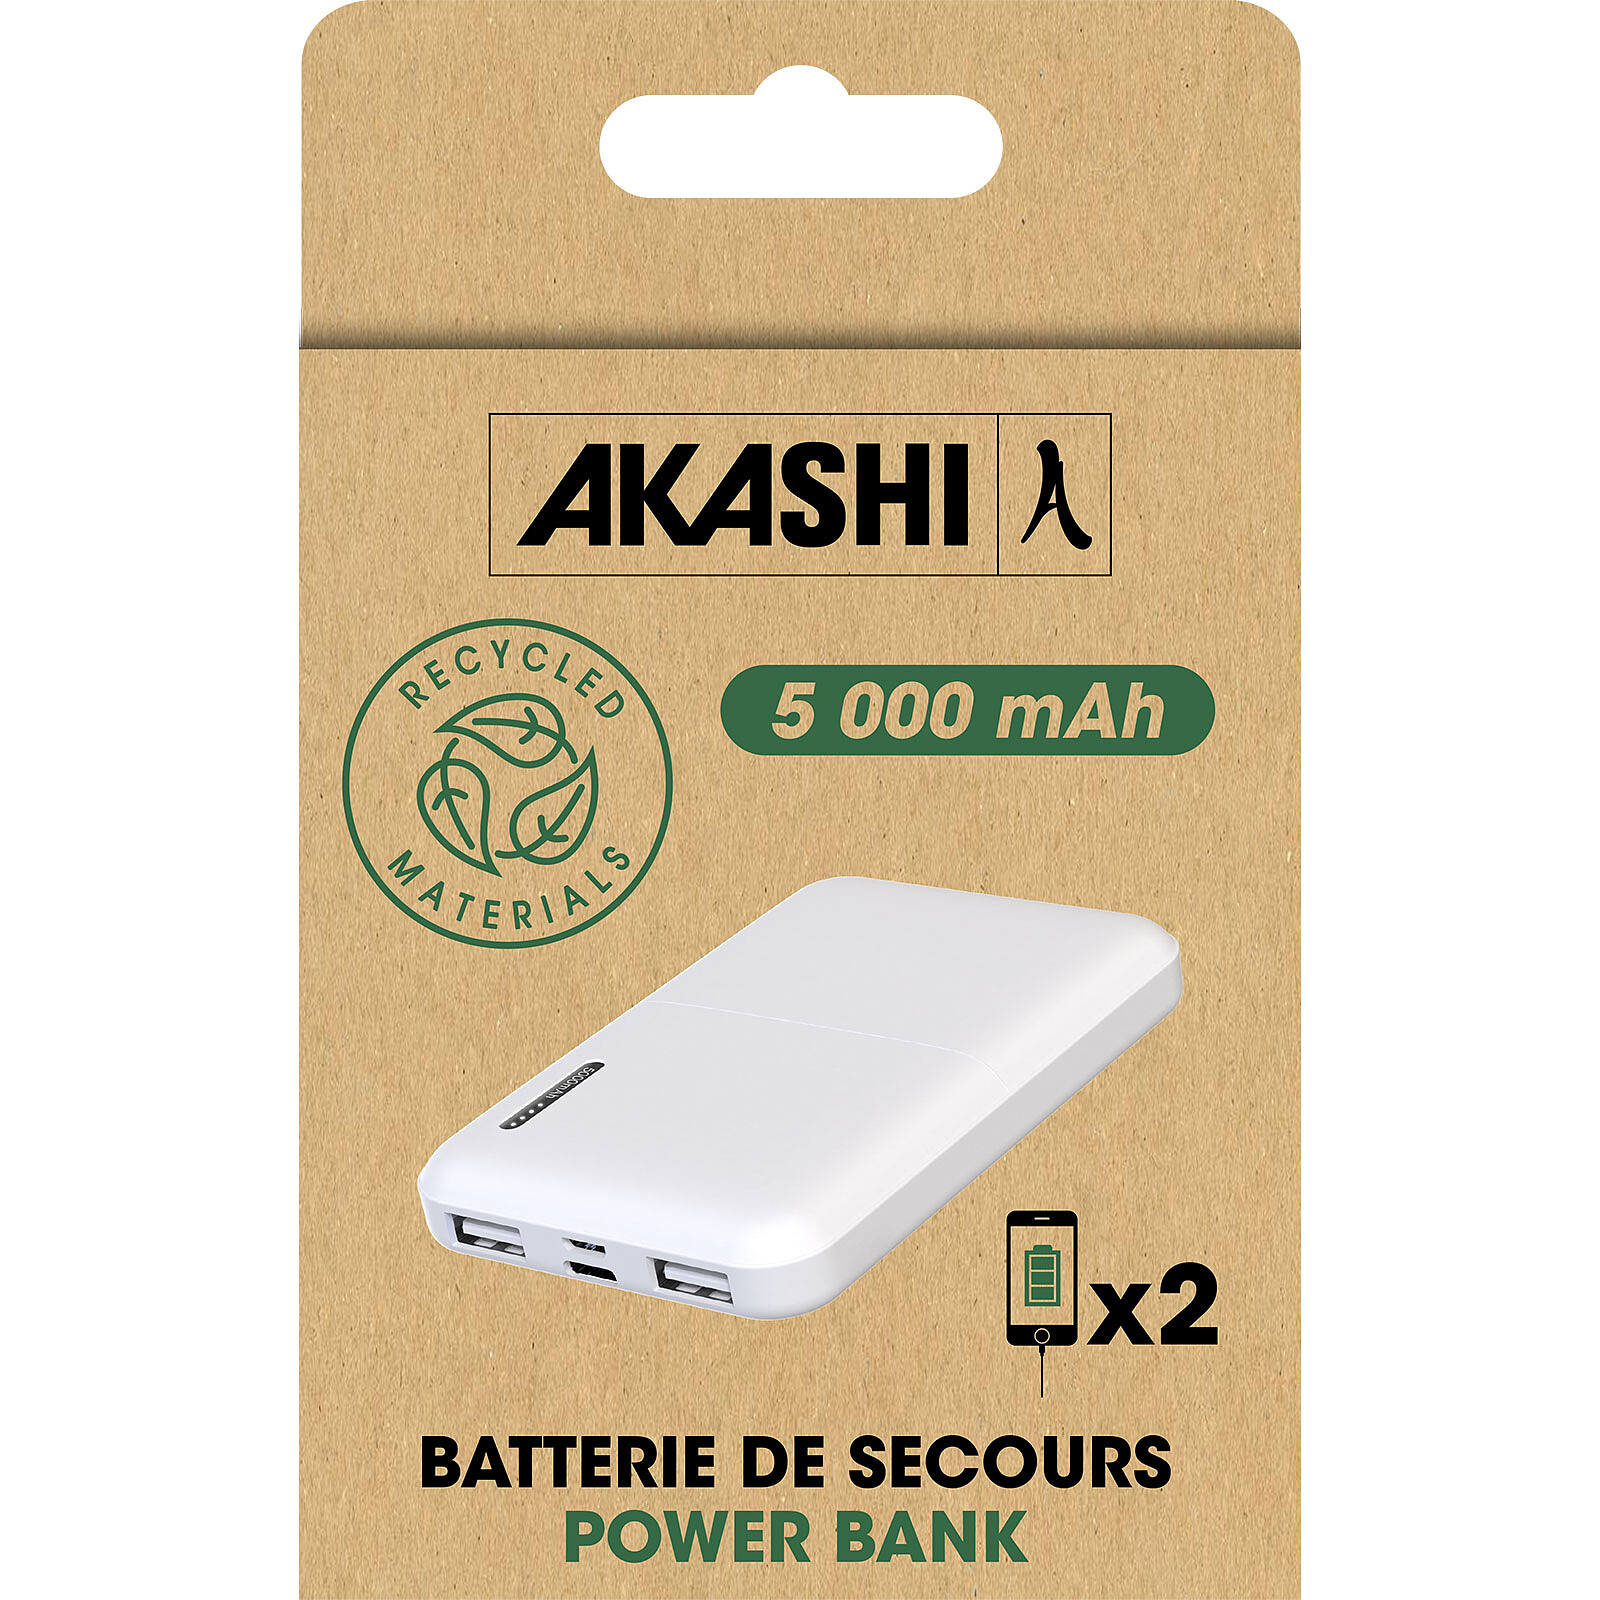 Batería inalámbrica Akashi Qi de respaldo 5000 mAh - Batería externa - LDLC